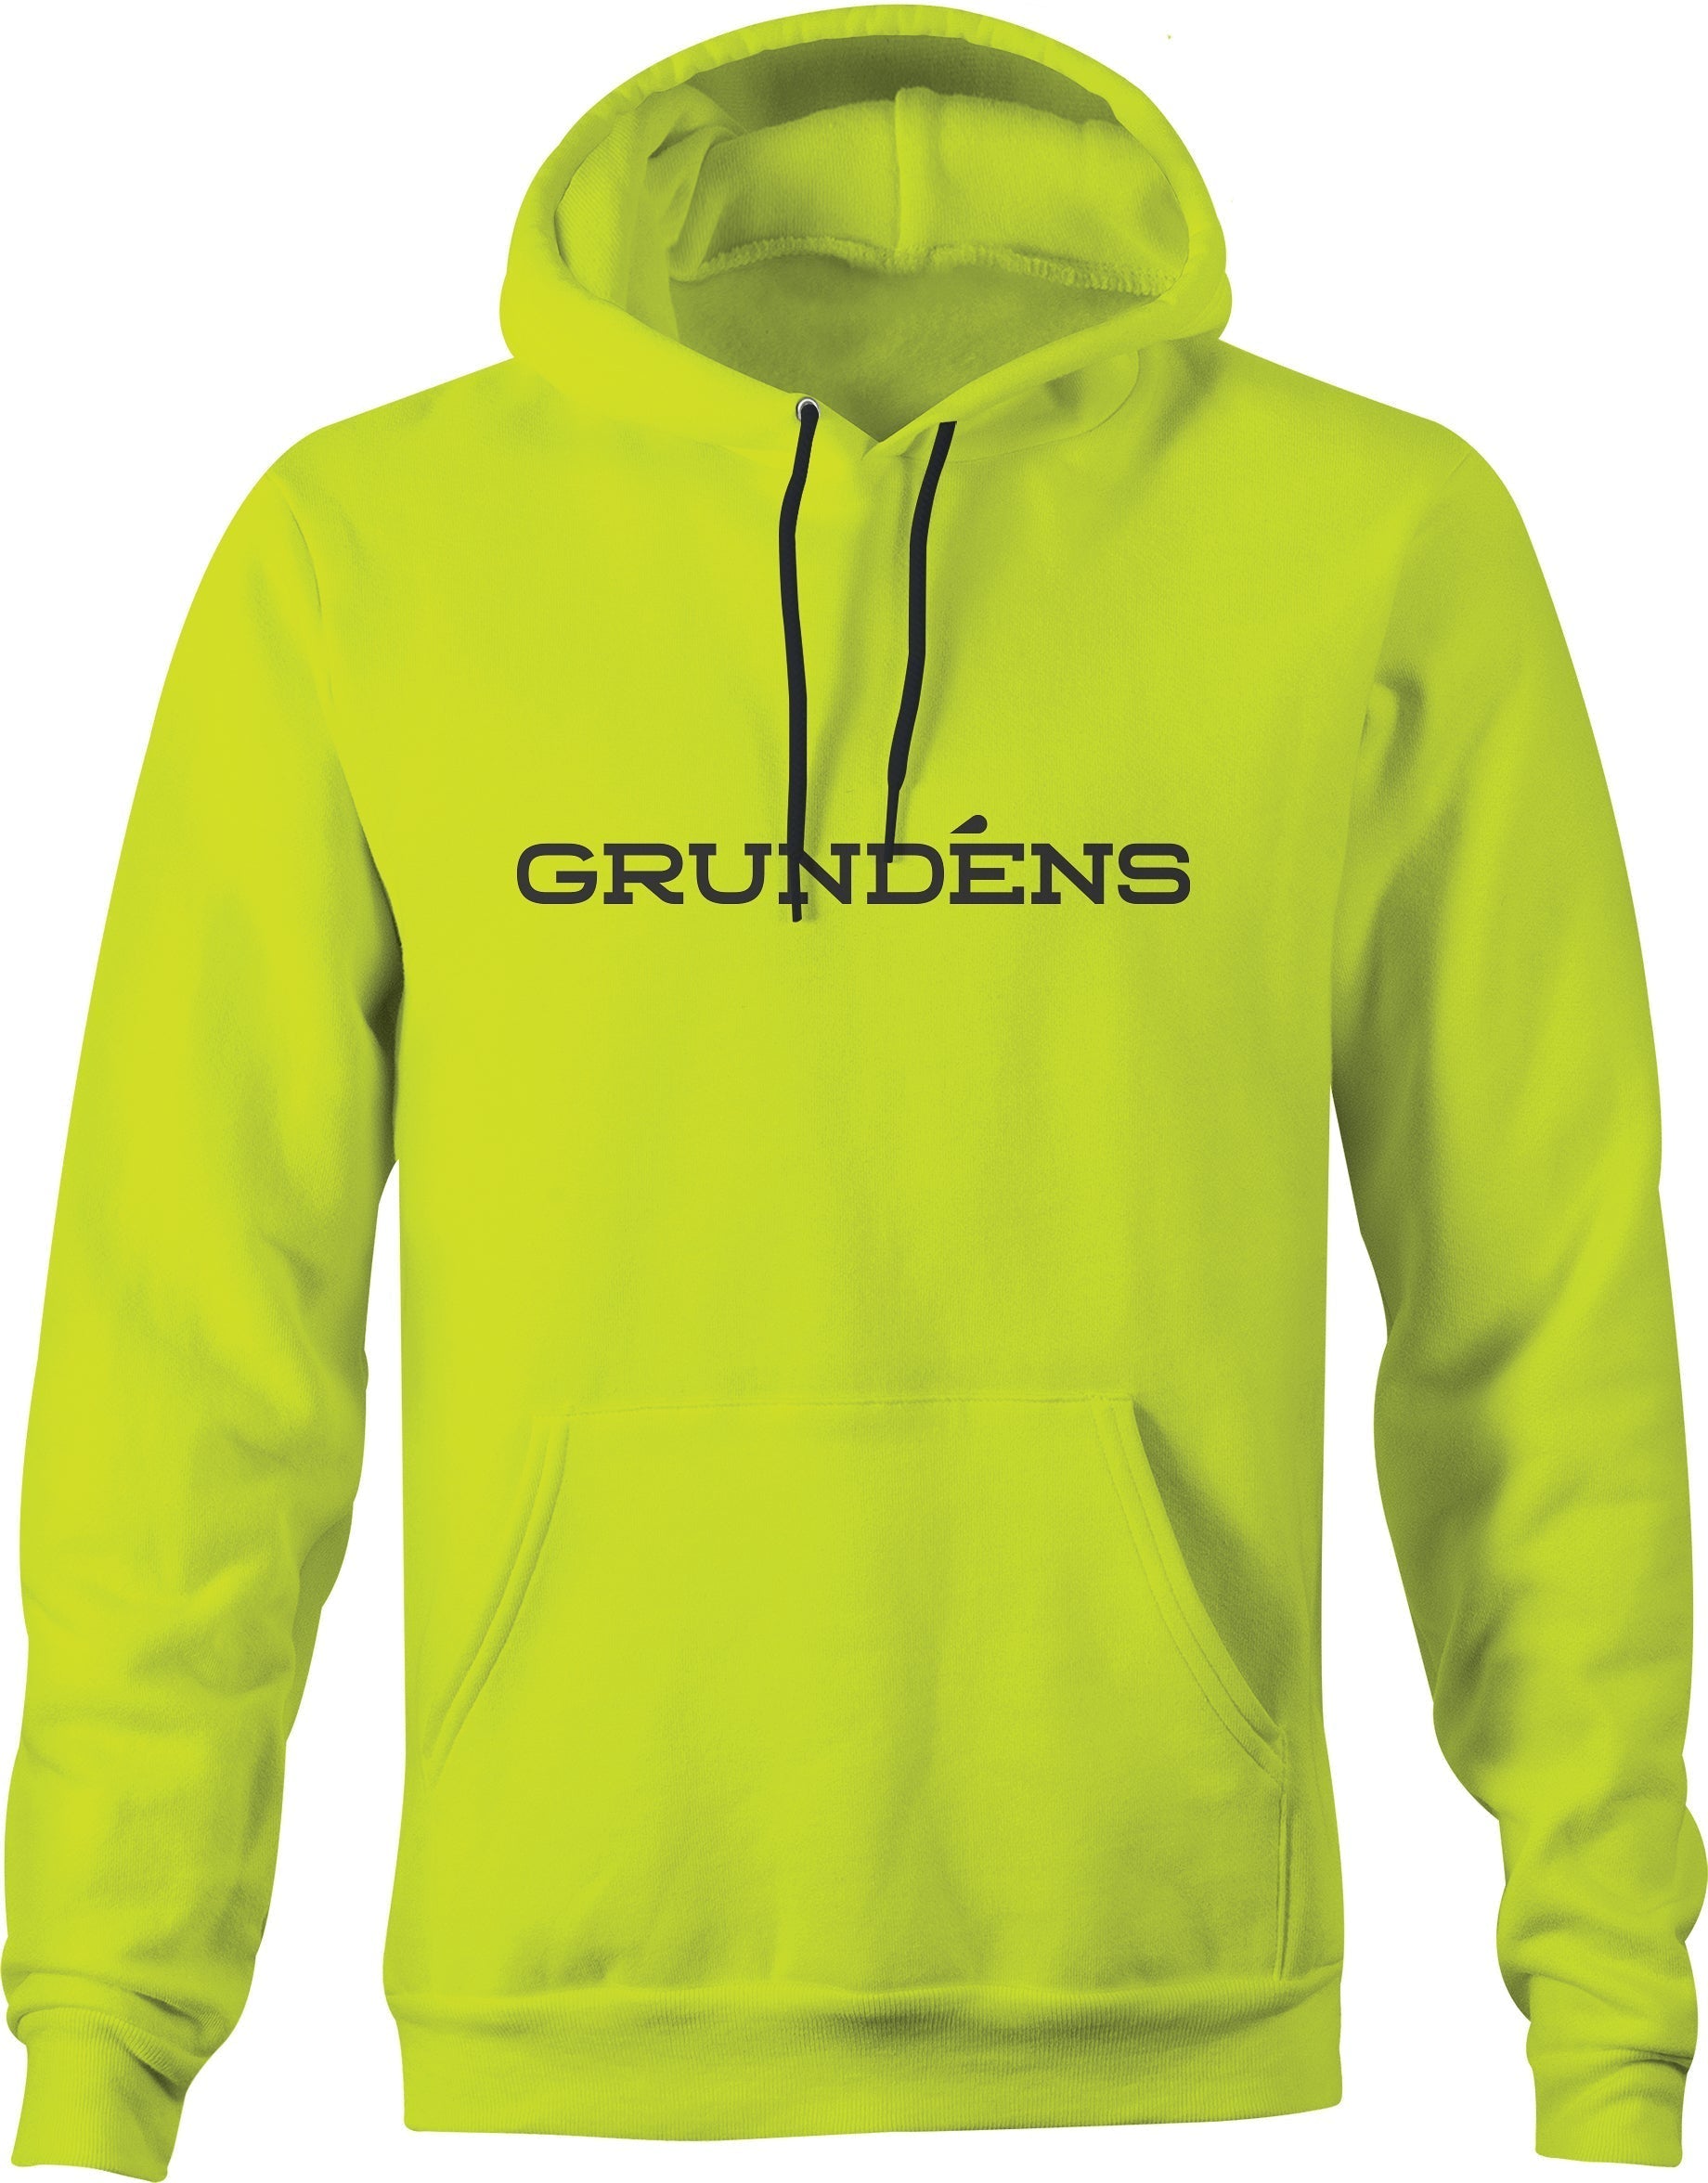 Grundéns Men's Wordmark Pullover Hoodie - Work World - Workwear, Work Boots, Safety Gear